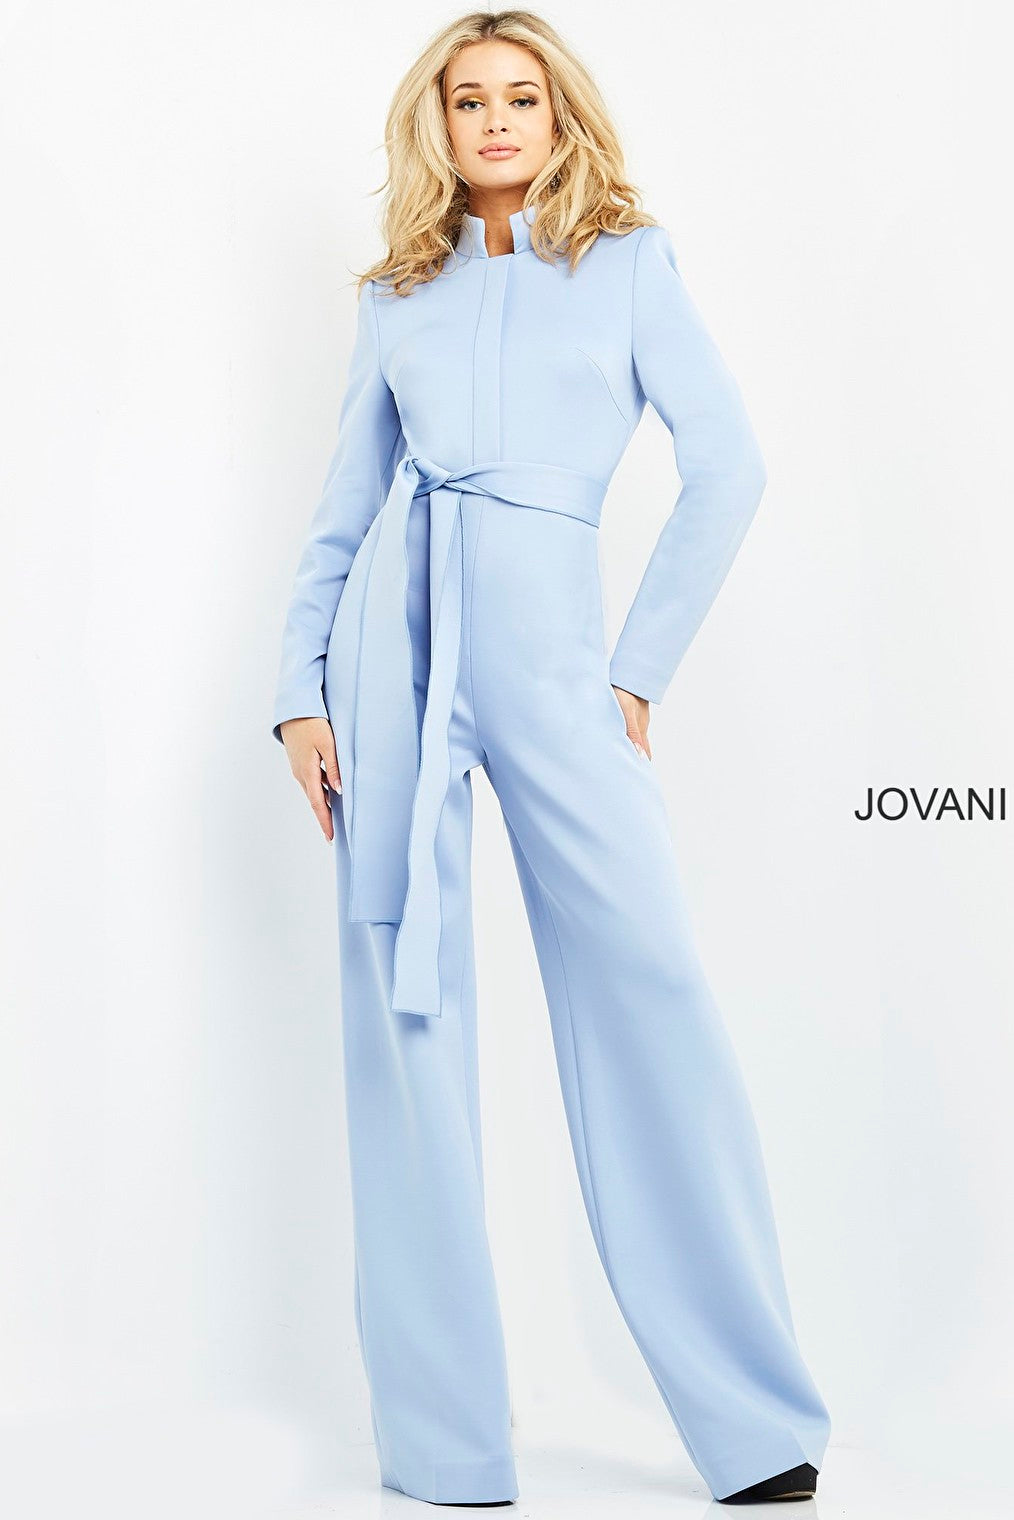 Straight leg pants light blue jumpsuit Jovani 06205